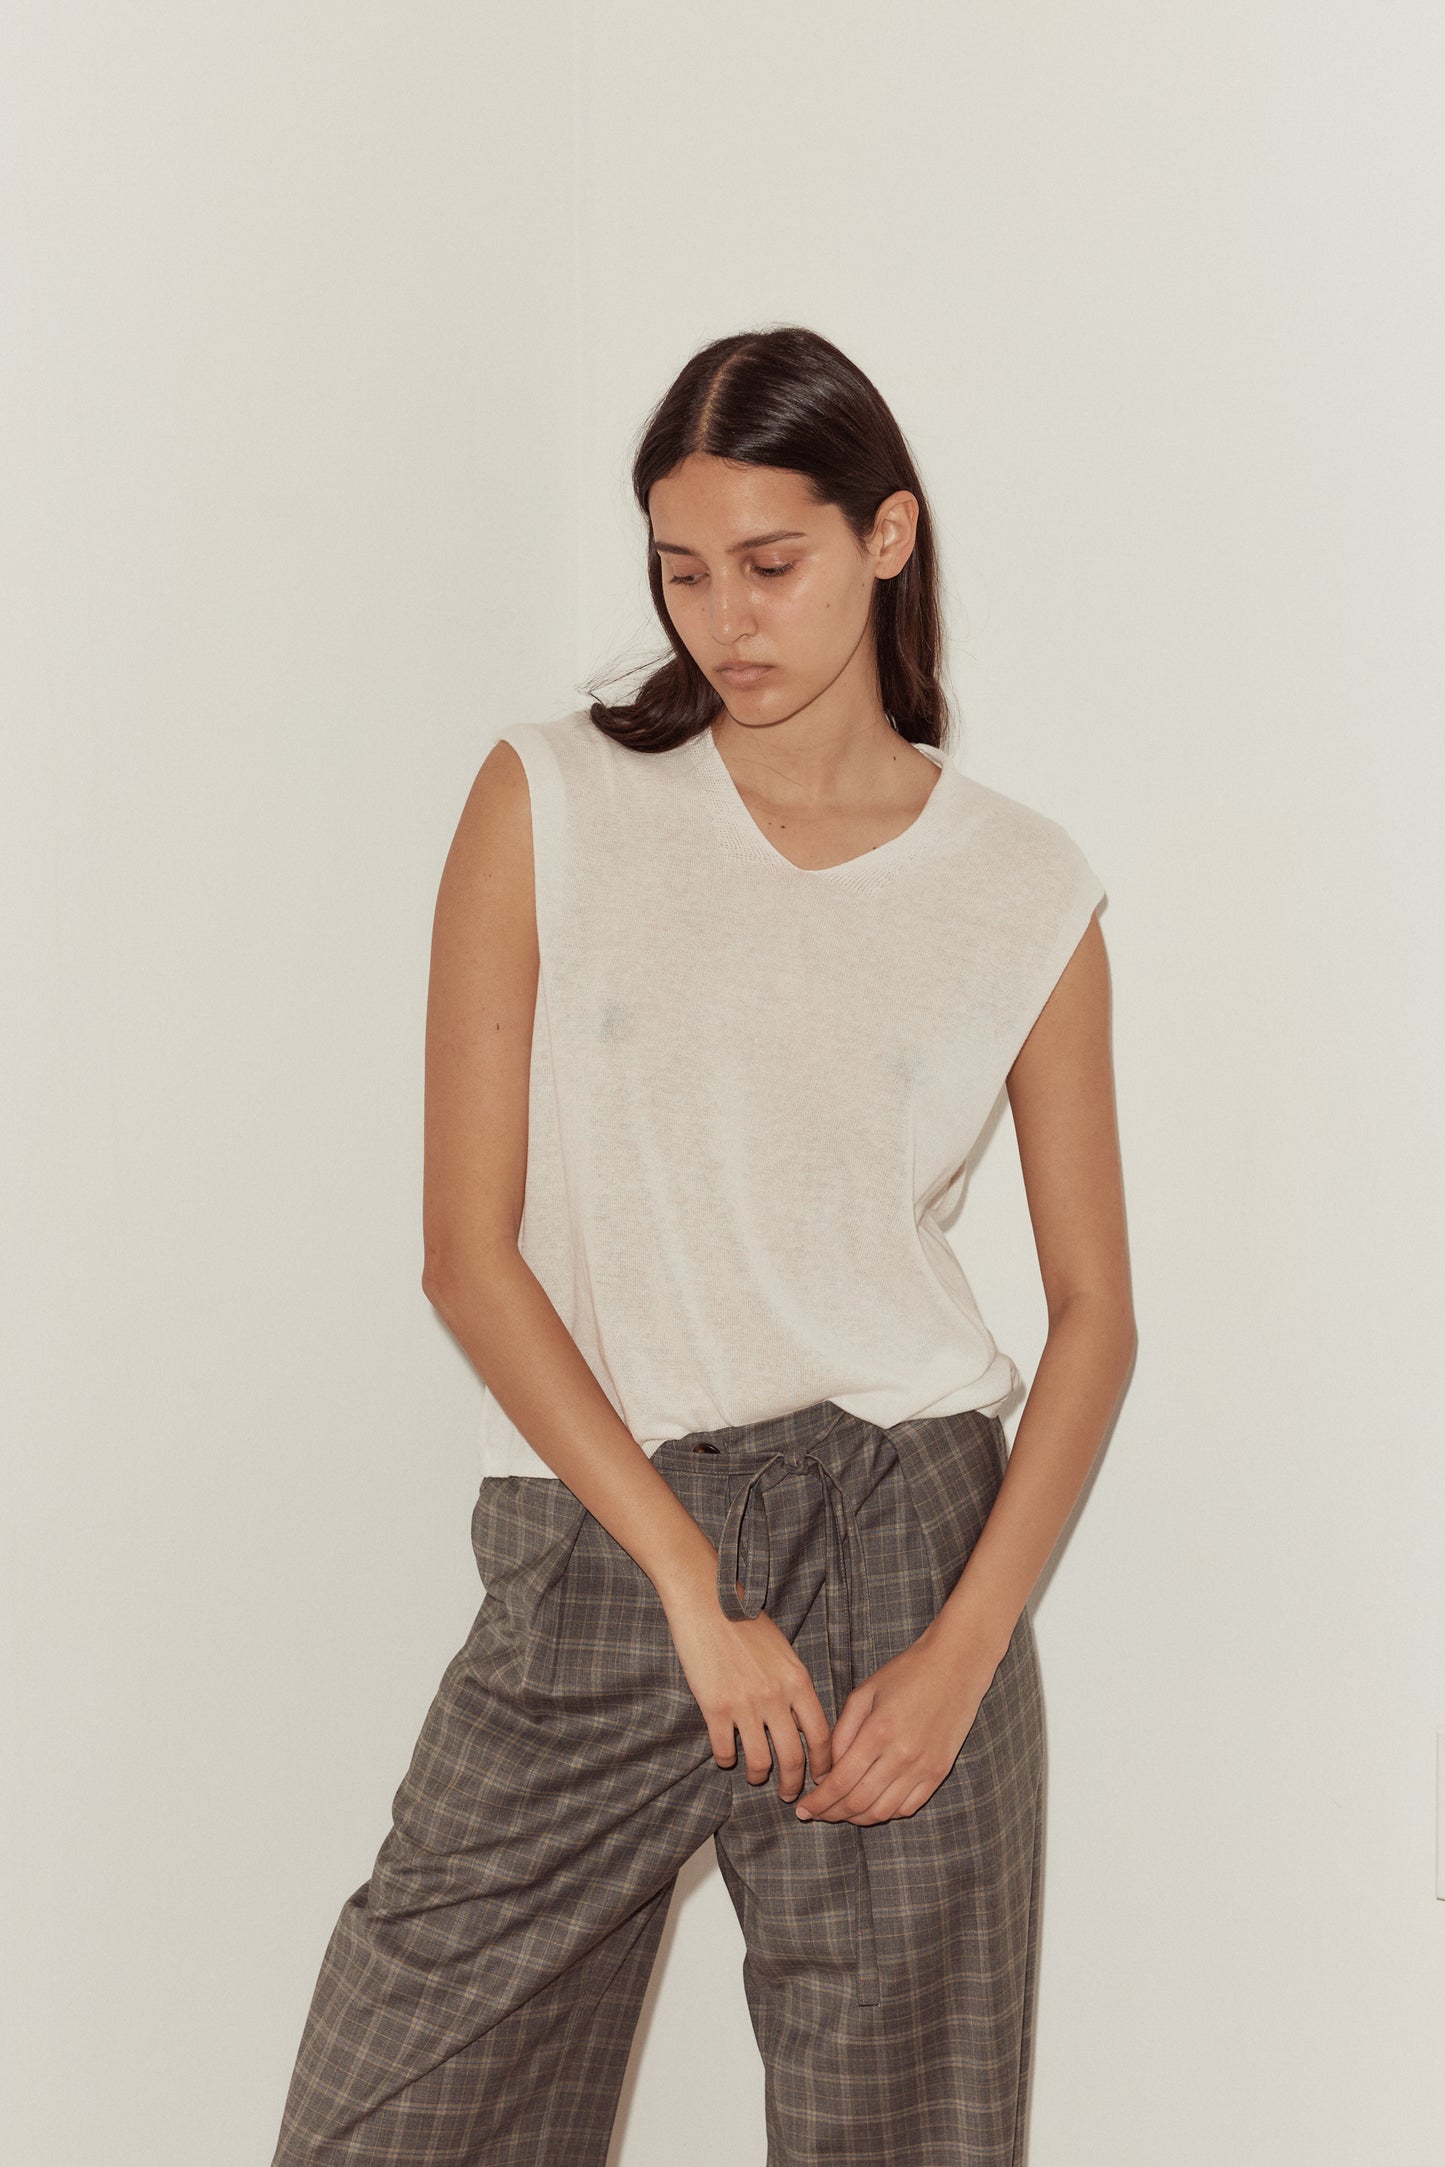 Female model wearing Loose Knitted Vest - White by Deiji Studios against plain background